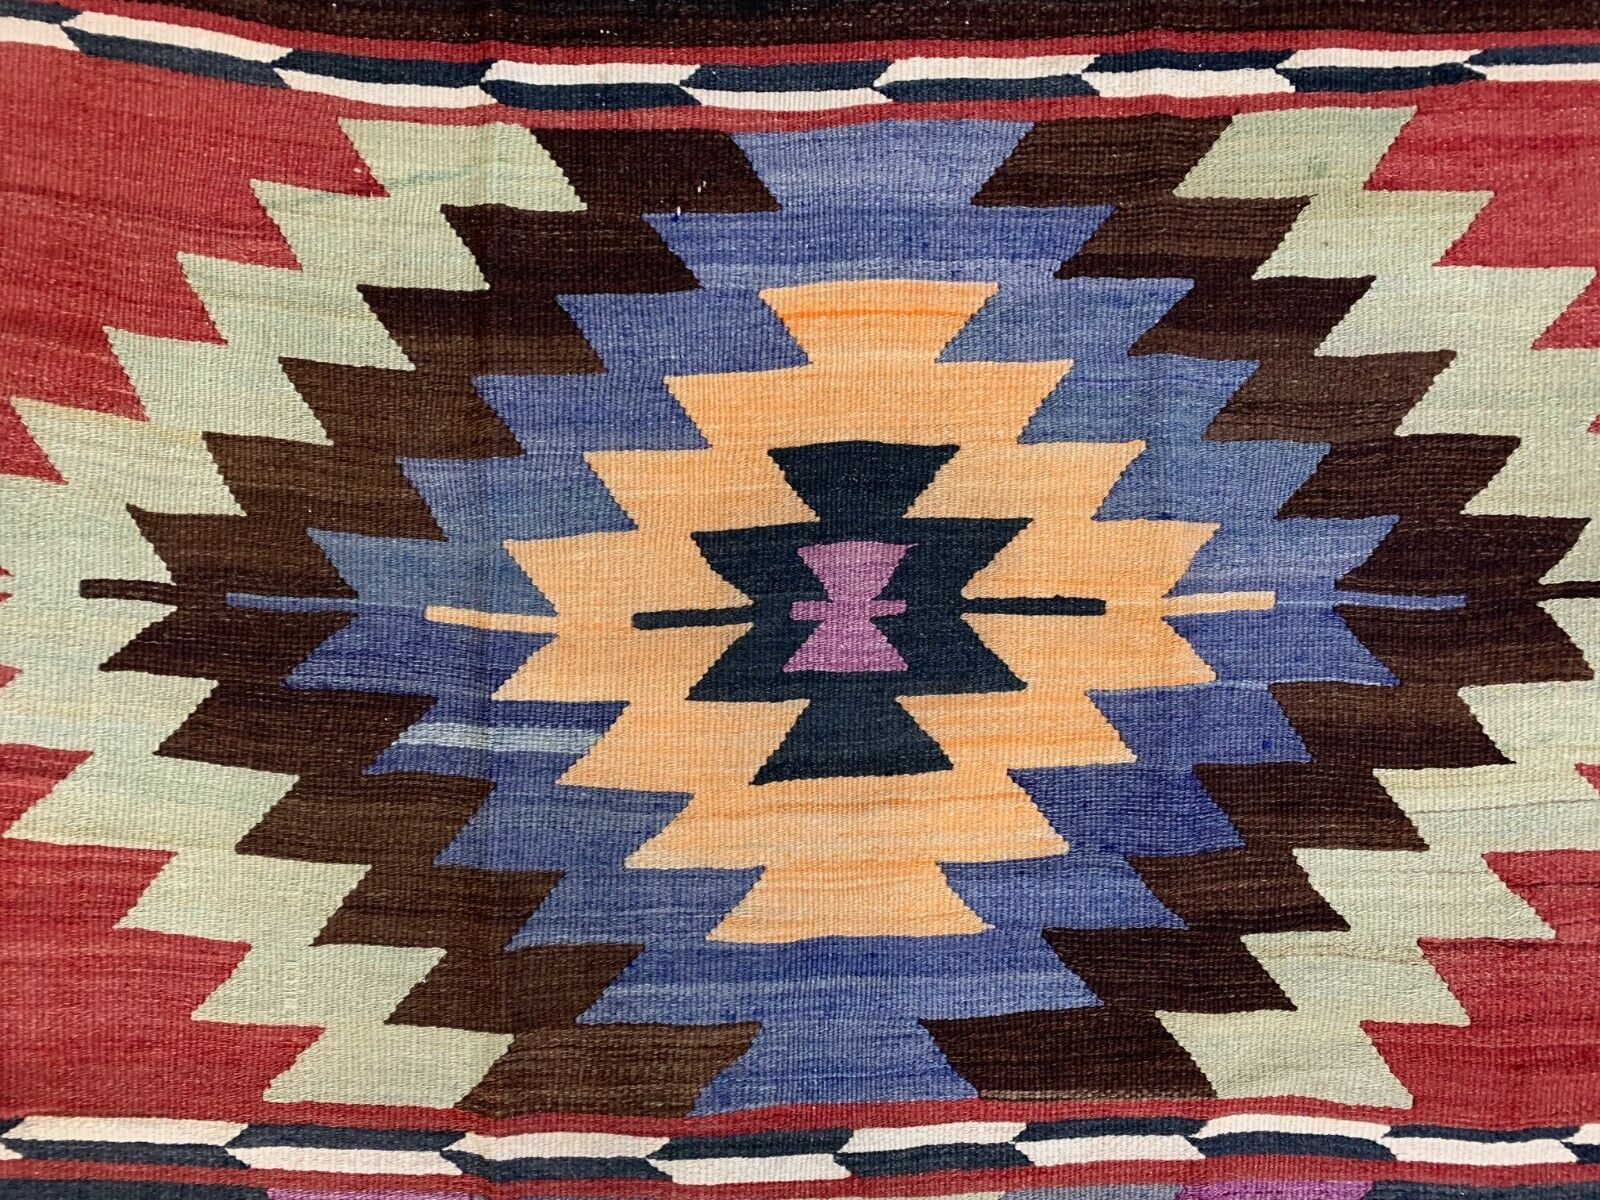 Vintage Turkish Kilim 315x139 cm wool Kelim rug Large, Purple, Red, Black, Blue